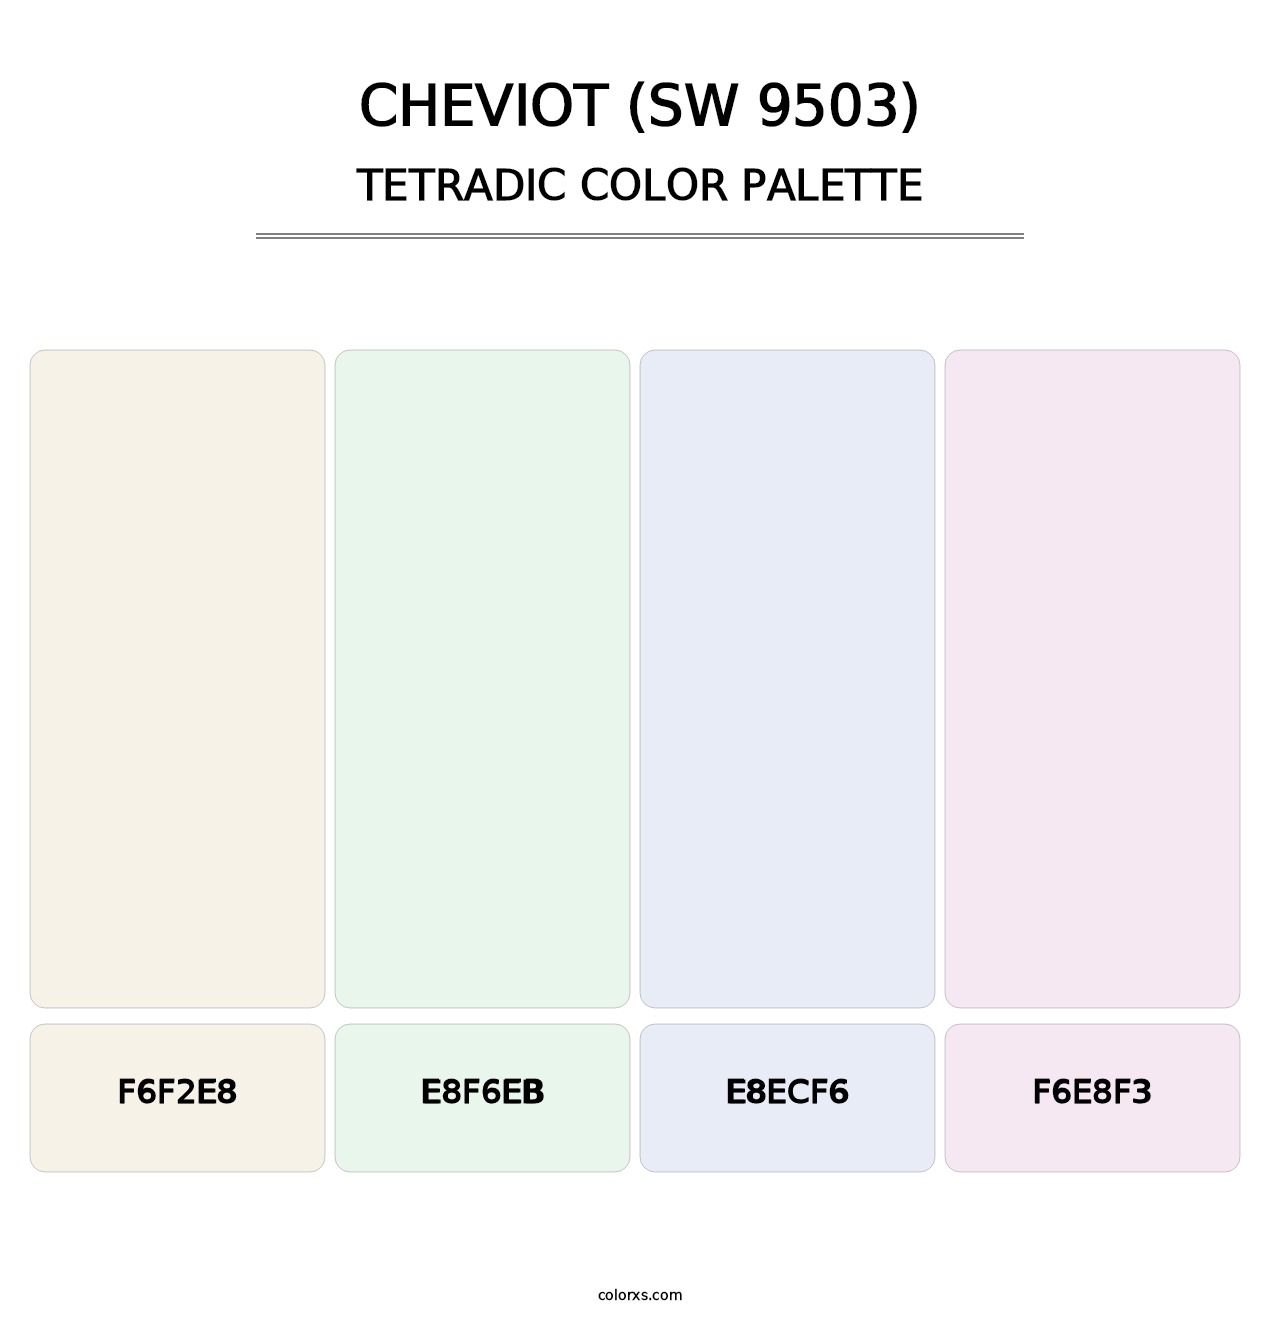 Cheviot (SW 9503) - Tetradic Color Palette